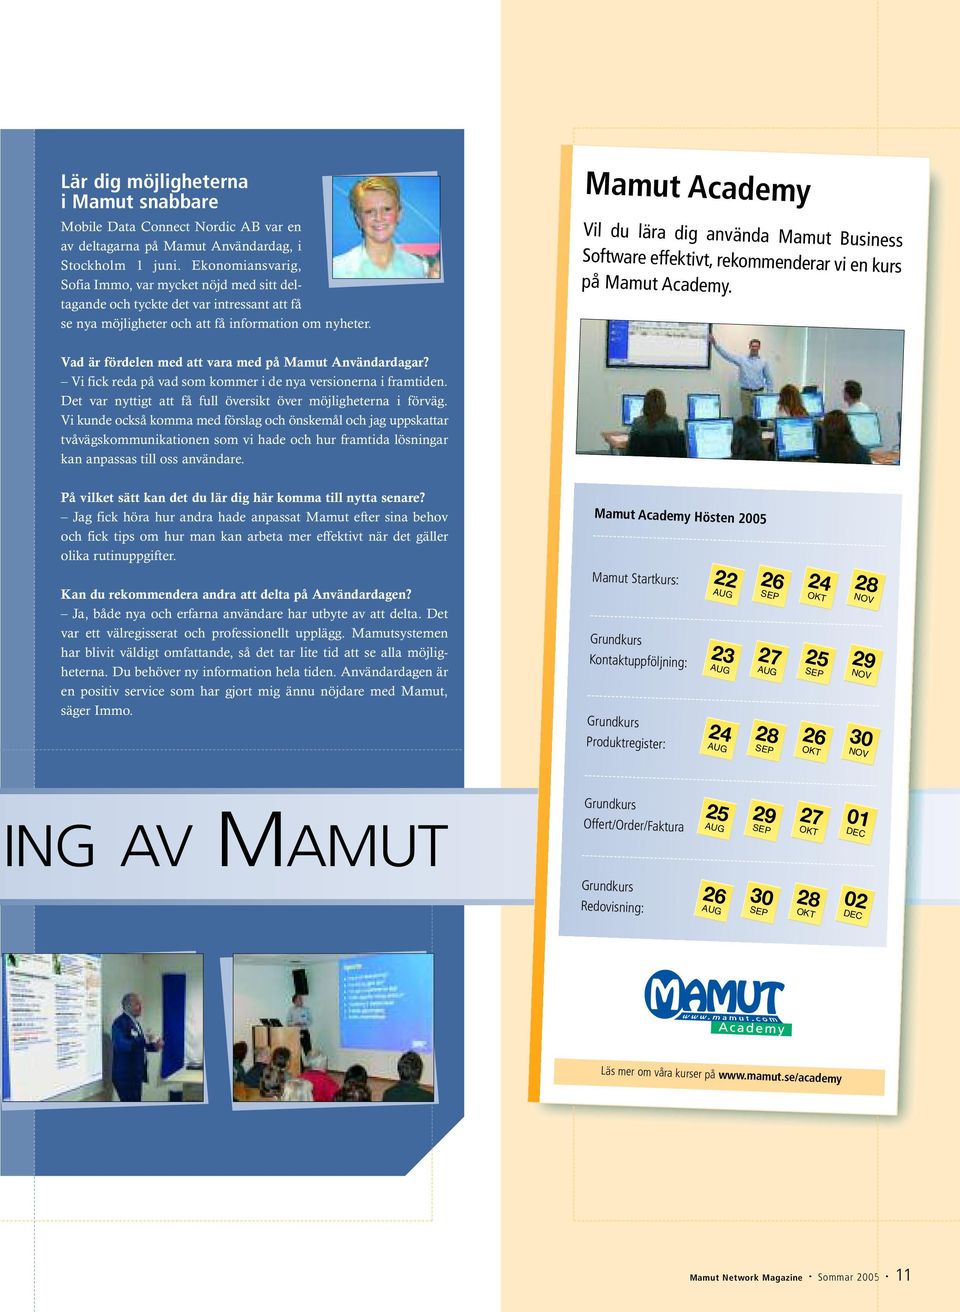 Mamut Academy Vil du lära dig använda Mamut Business Software effektivt, rekommenderar vi en kurs på Mamut Academy. Vad är fördelen med att vara med på Mamut Användardagar?